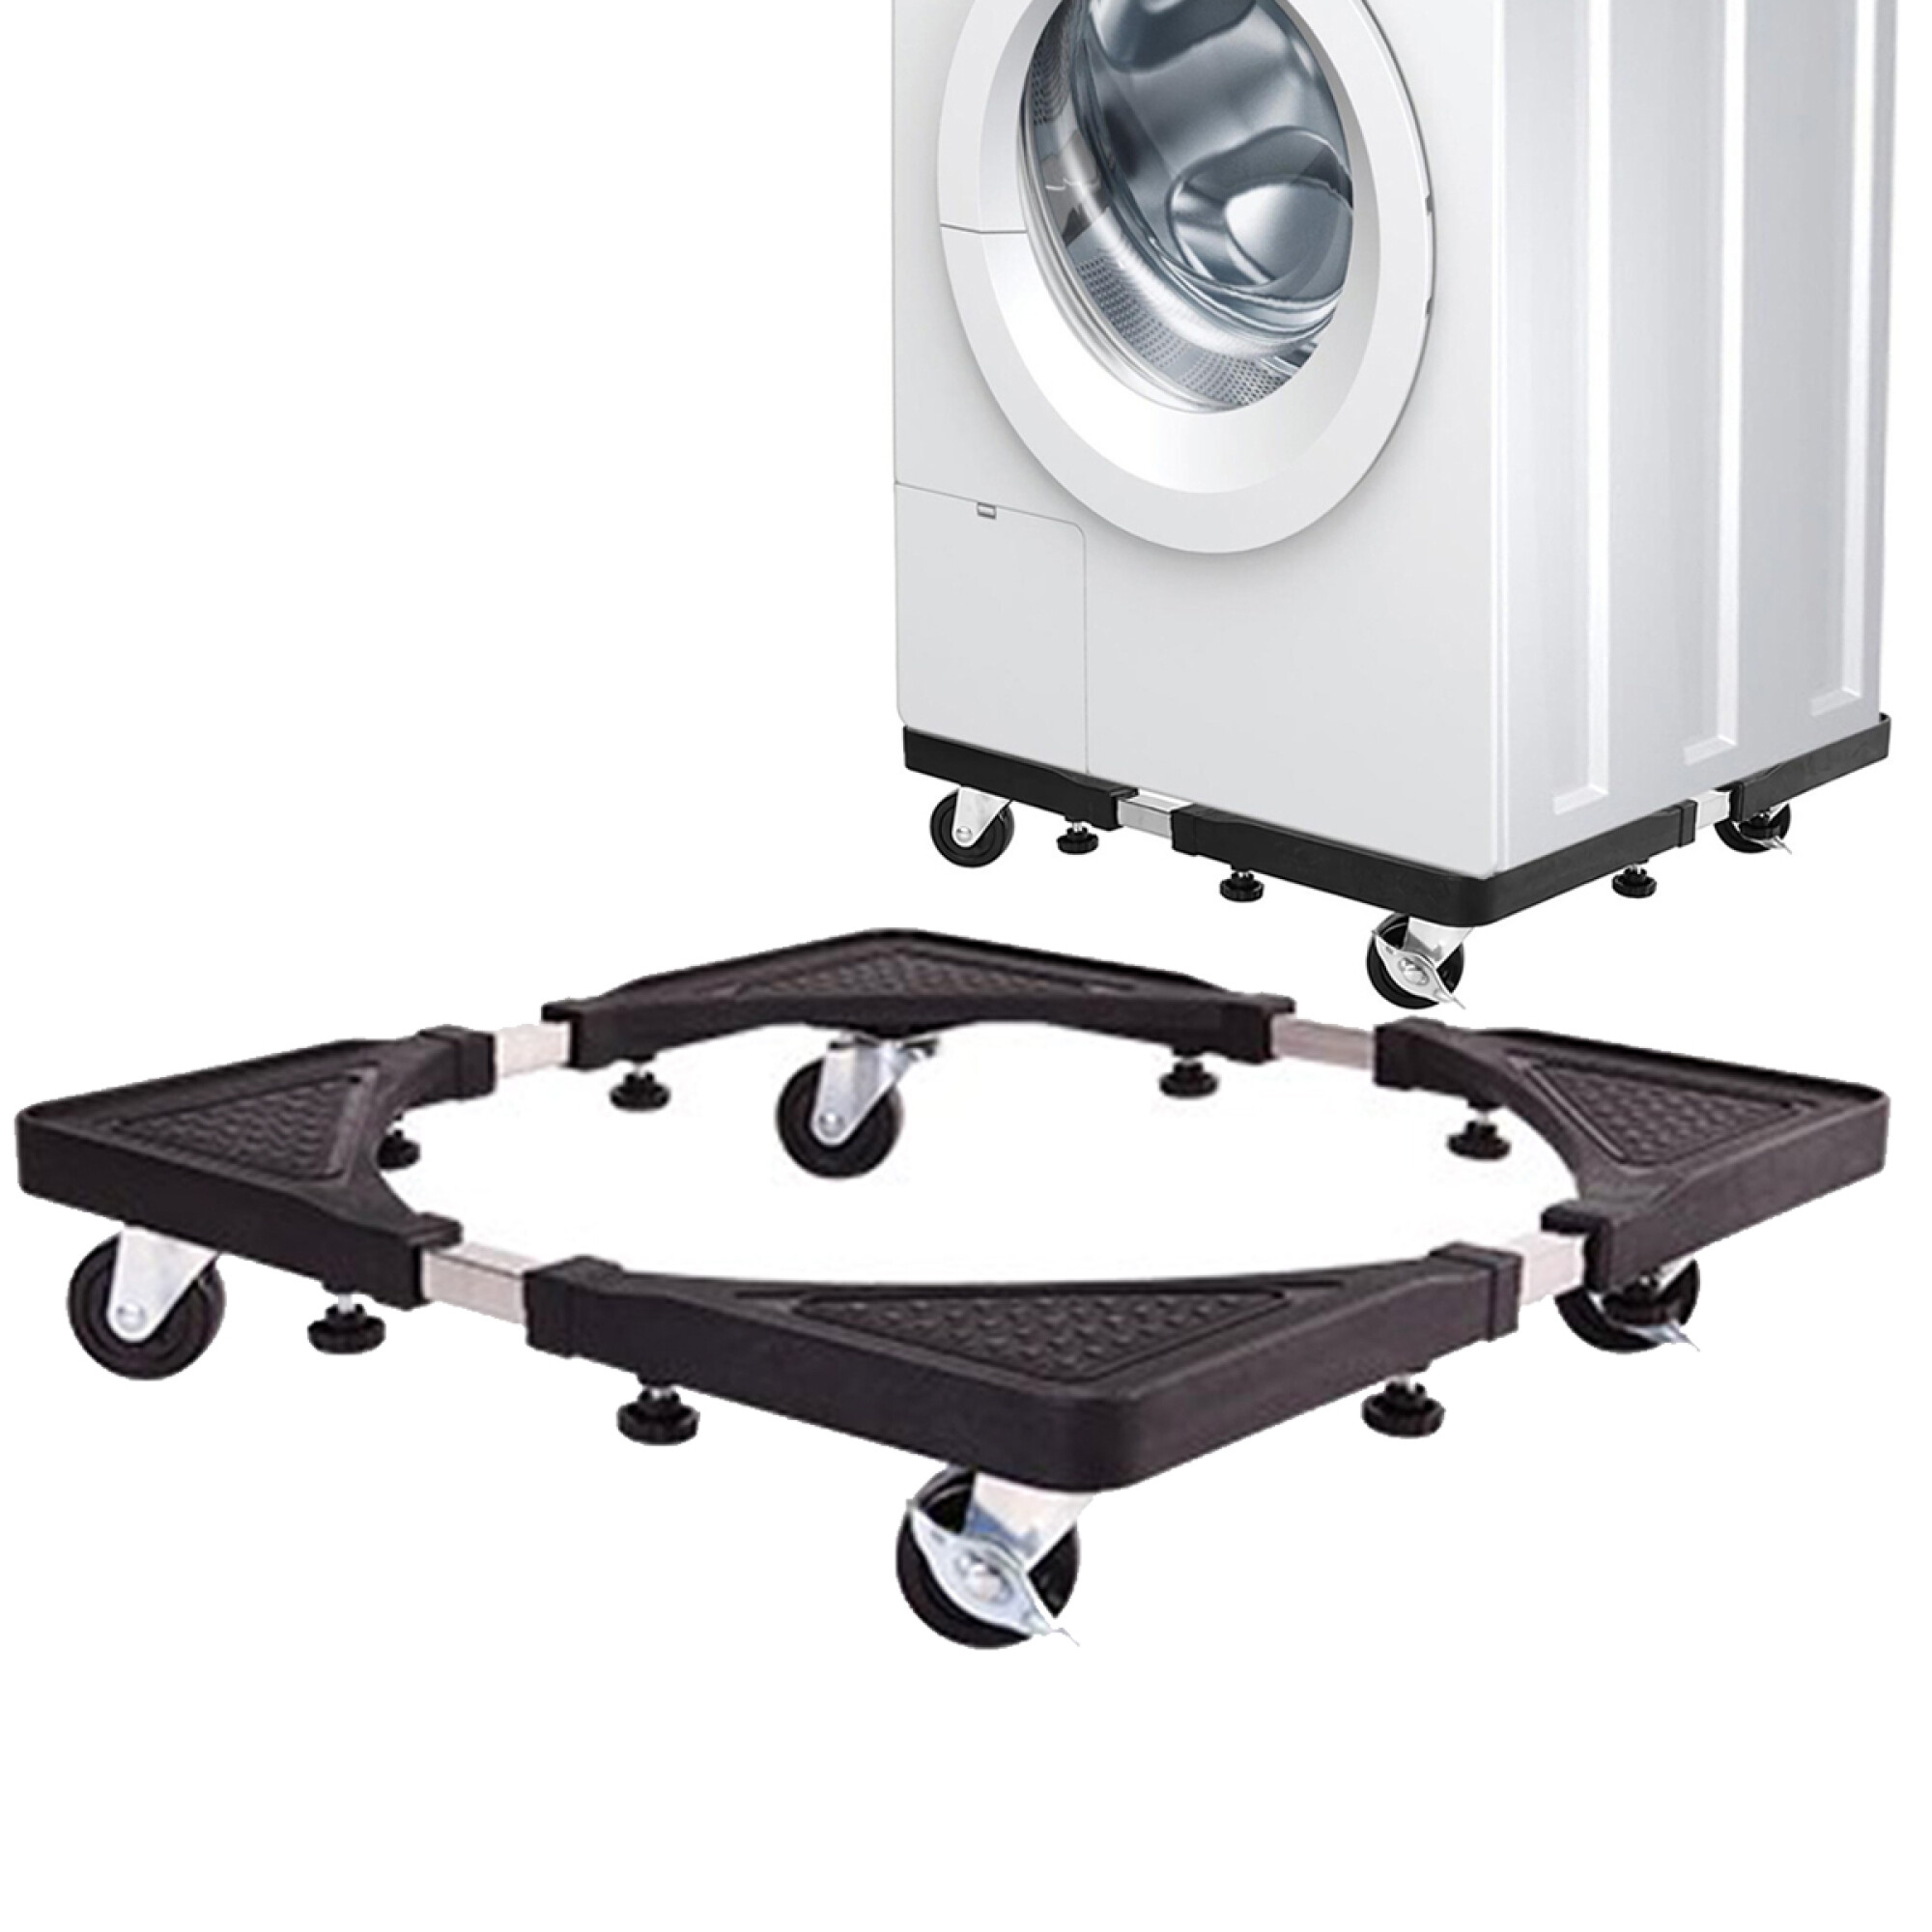 Base soporte multifuncional con ruedas para electrodomésticos